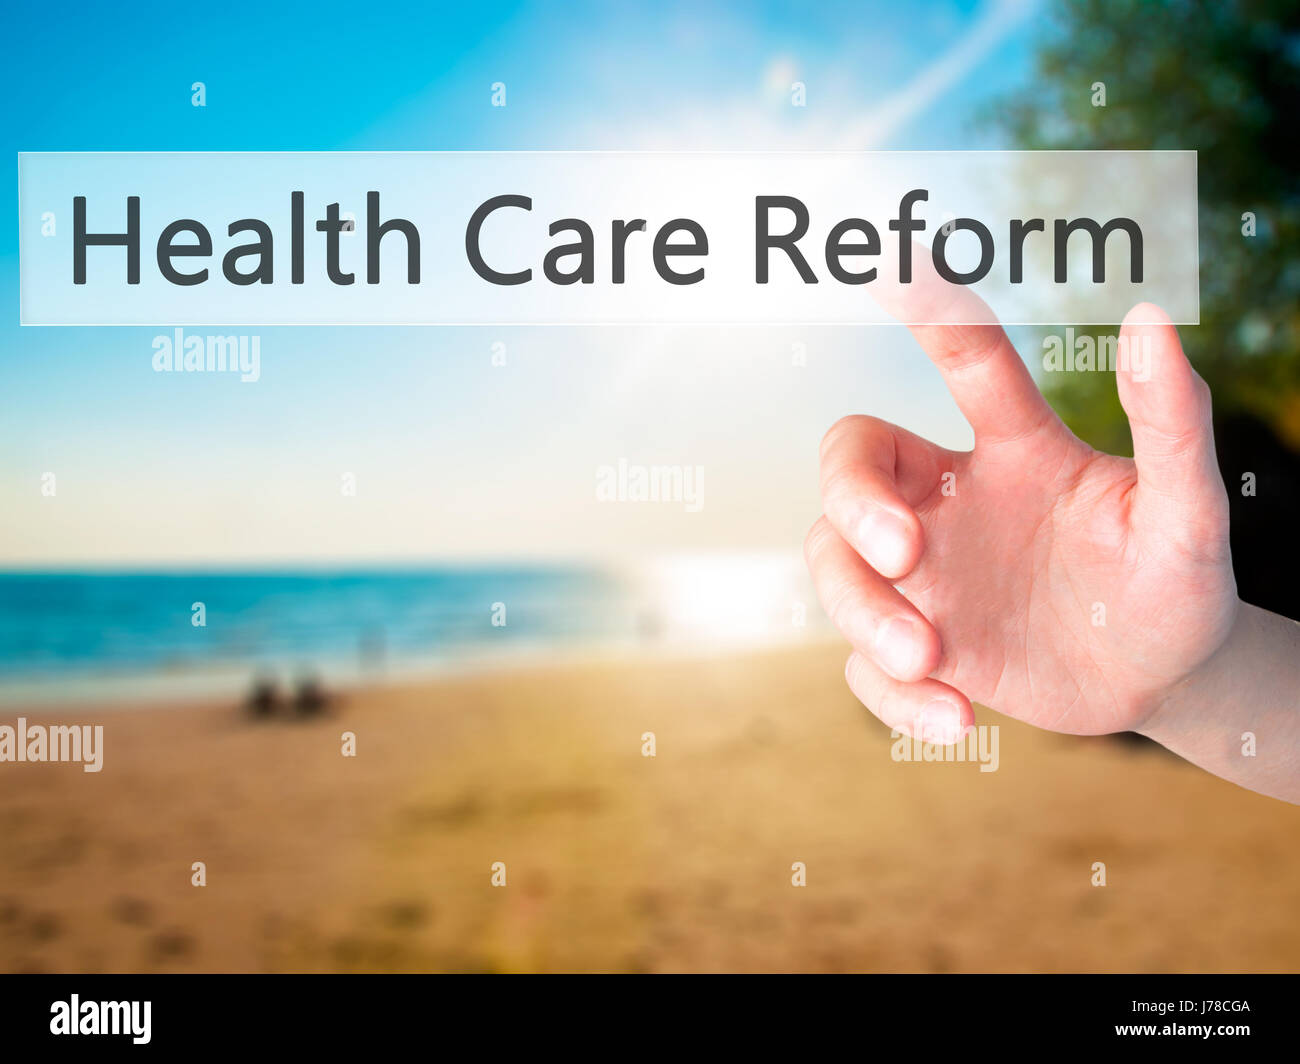 Gesundheitsreform - Hand drücken einer Taste auf unscharfen Hintergrund Konzept. Wirtschaft, Technologie, Internet-Konzept. Stock Foto Stockfoto